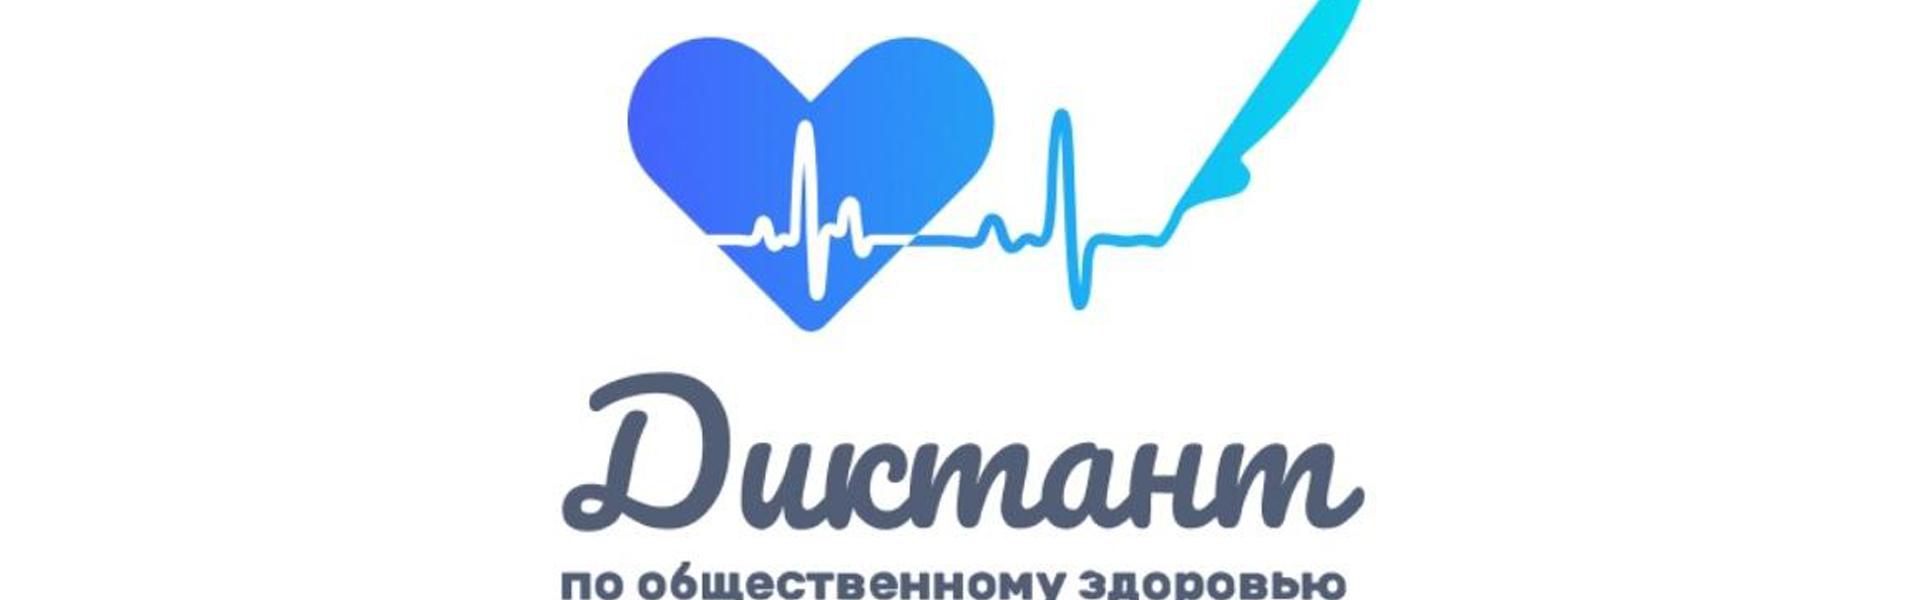 Примите участие во II Всероссийском Диктанте по общественному здоровью